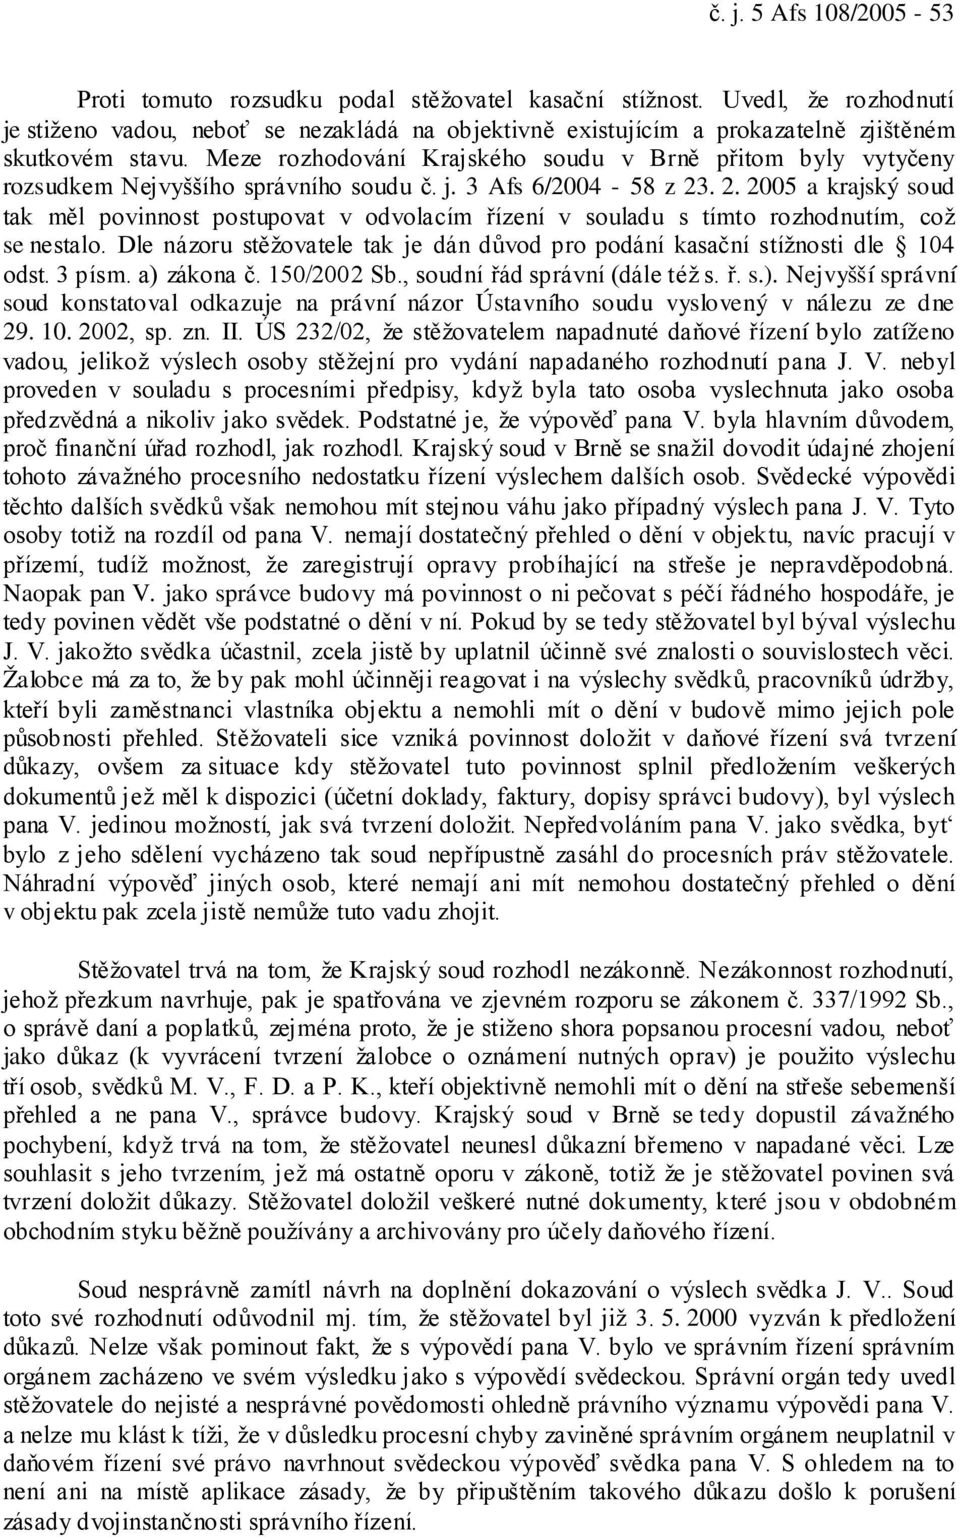 Meze rozhodování Krajského soudu v Brně přitom byly vytyčeny rozsudkem Nejvyššího správního soudu č. j. 3 Afs 6/2004-58 z 23